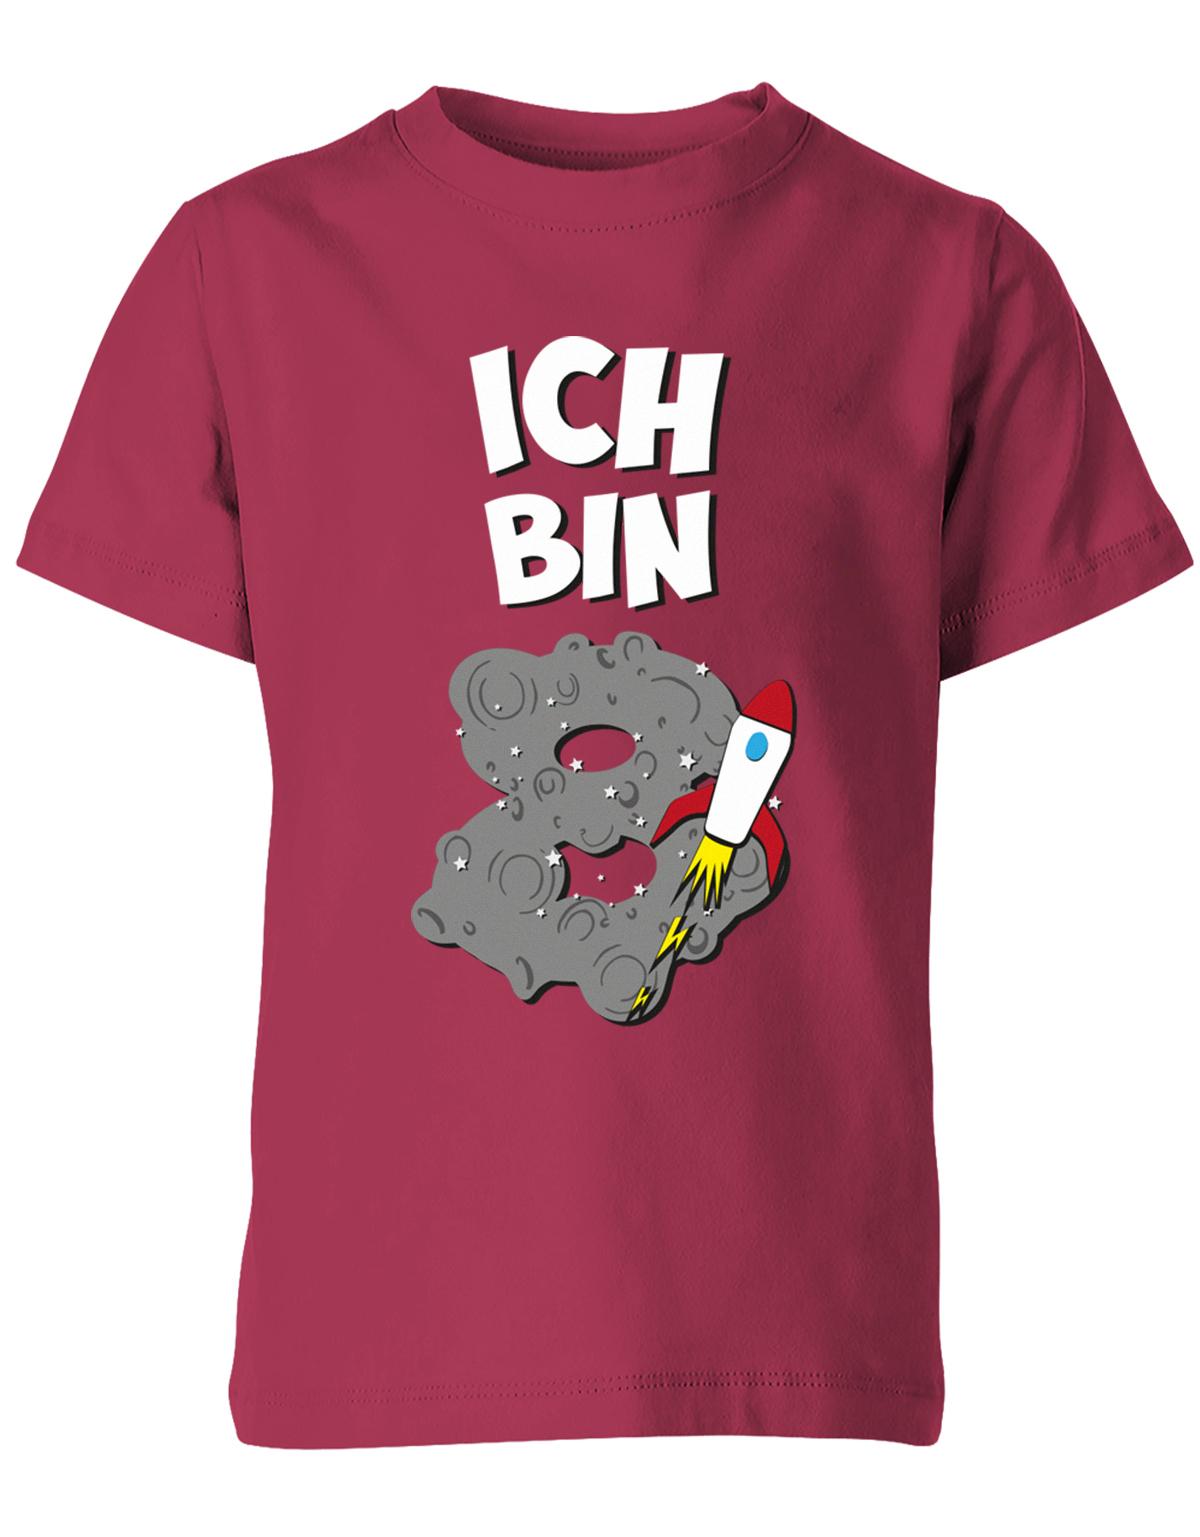 ich-bin-8-weltraum-rakete-planet-geburtstag-kinder-shirt-sorbet